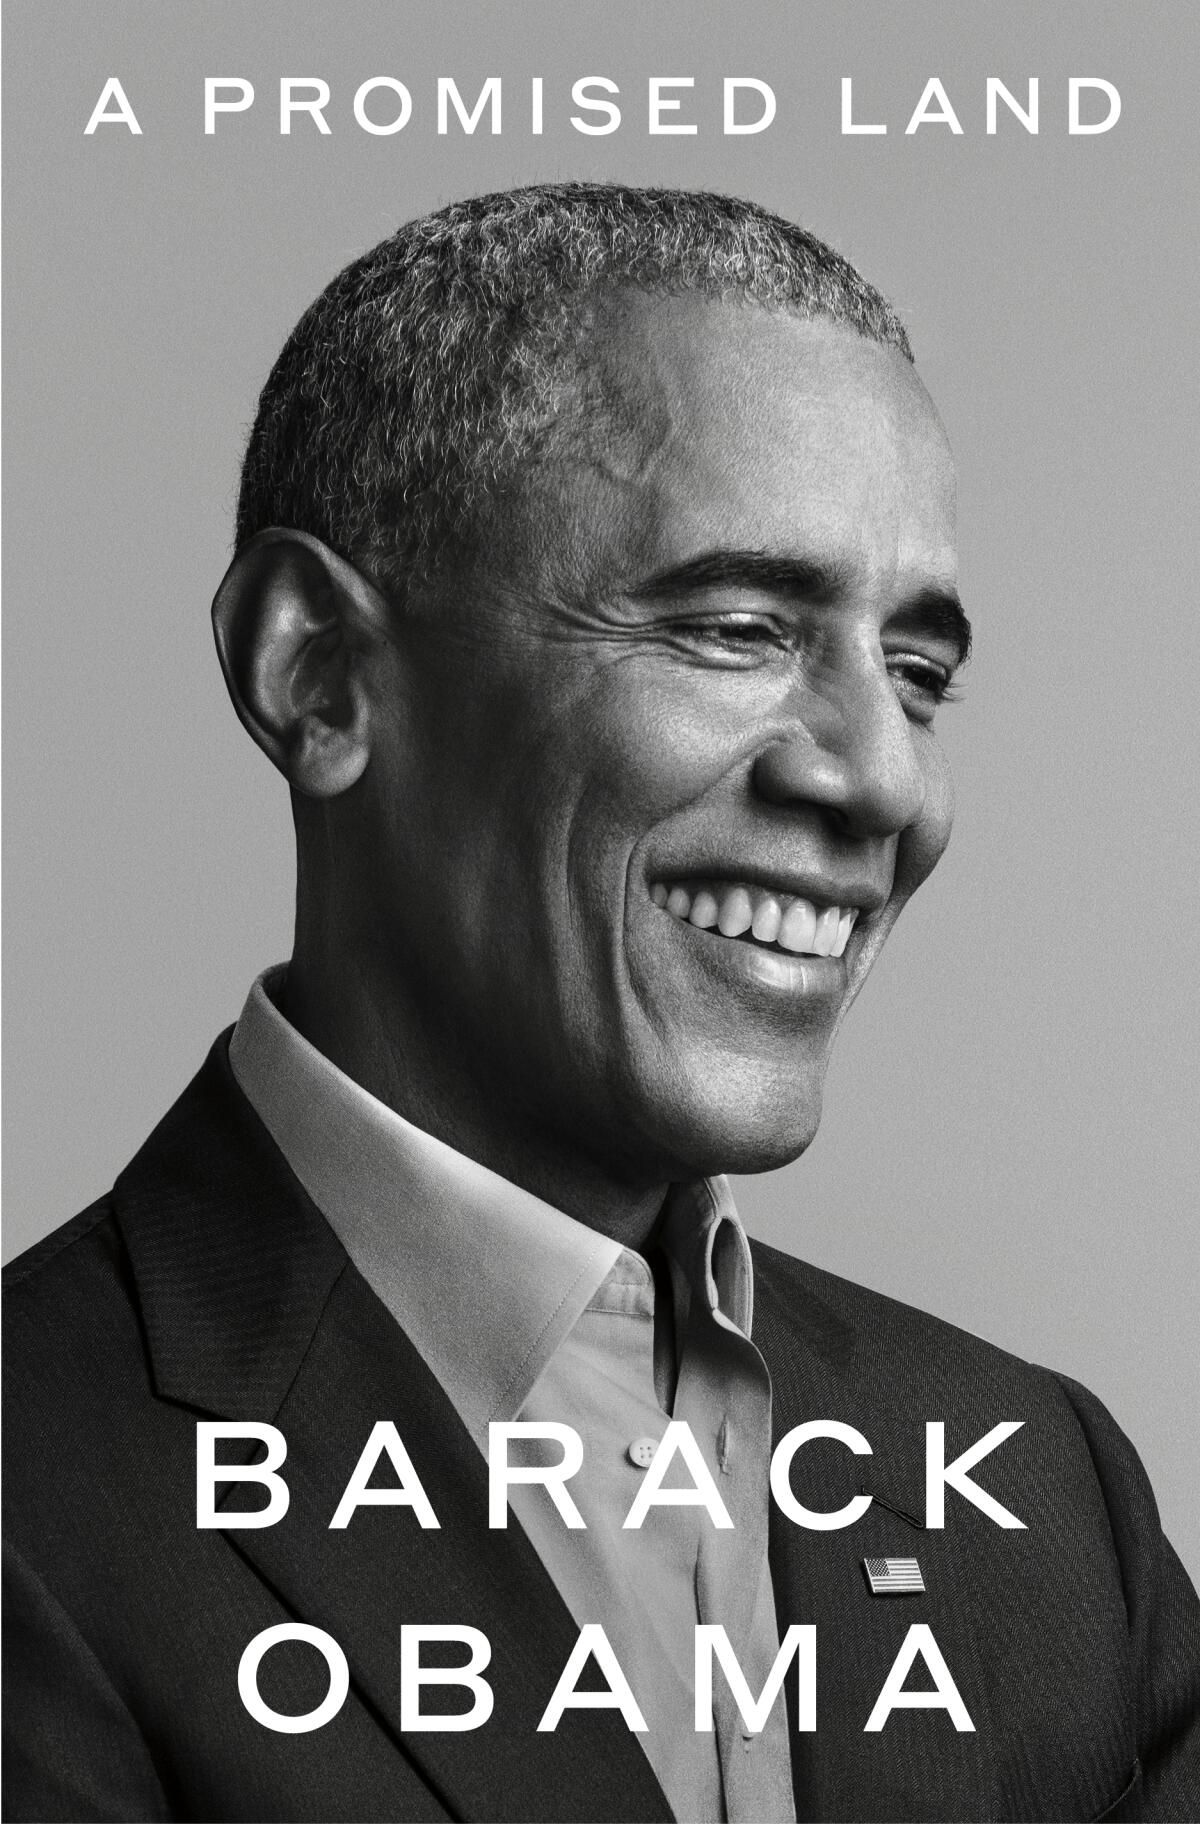 La portada de "A Promised Land", el primer tomo de las memorias del expresidente Barack Obama.